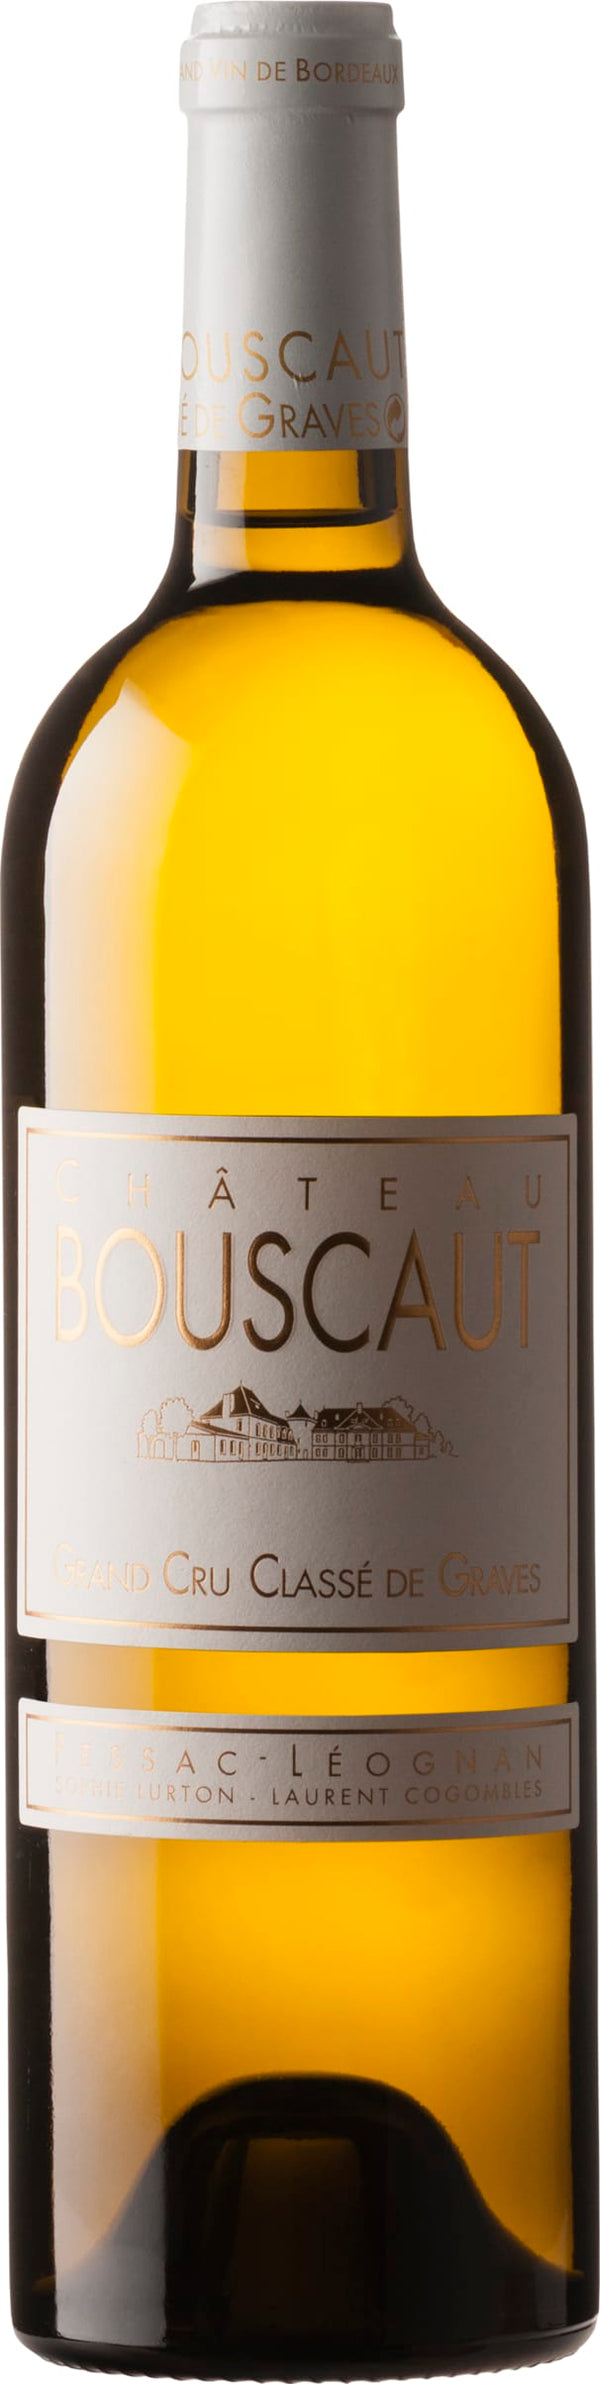 Chateau Bouscaut Pessac-Leognan Blanc, Cru Classe 2021 6x75cl - Just Wines 